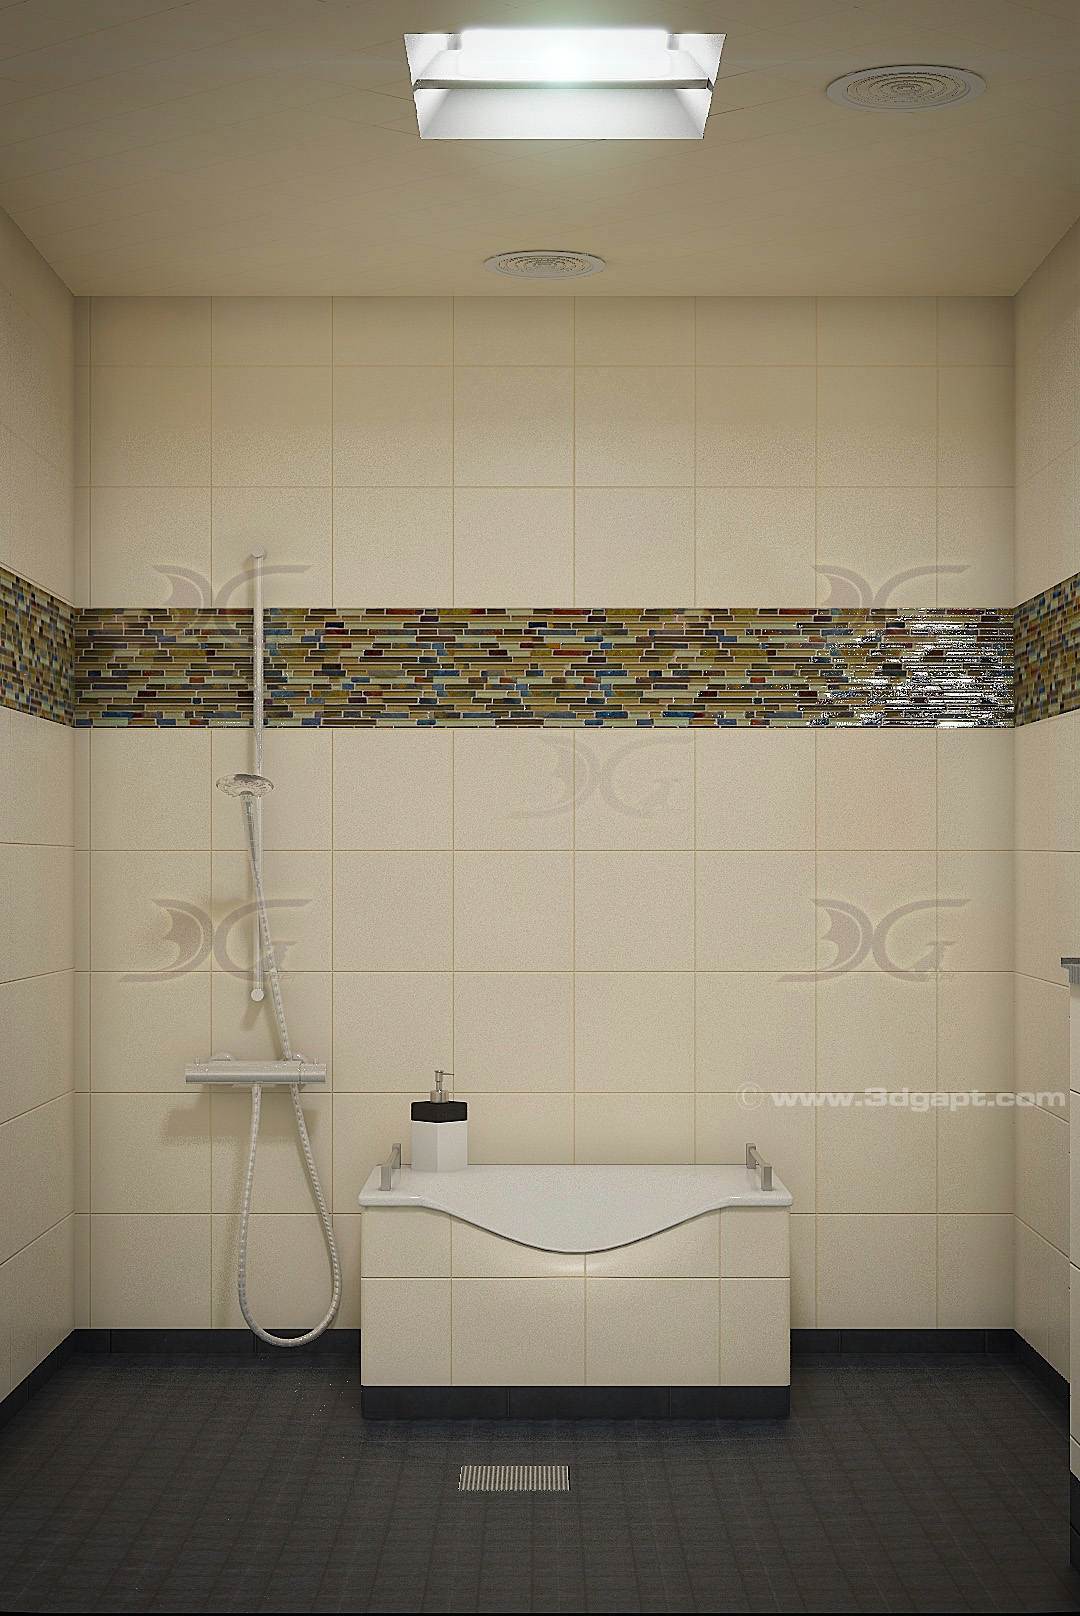 architecture interior container bathrooms0011